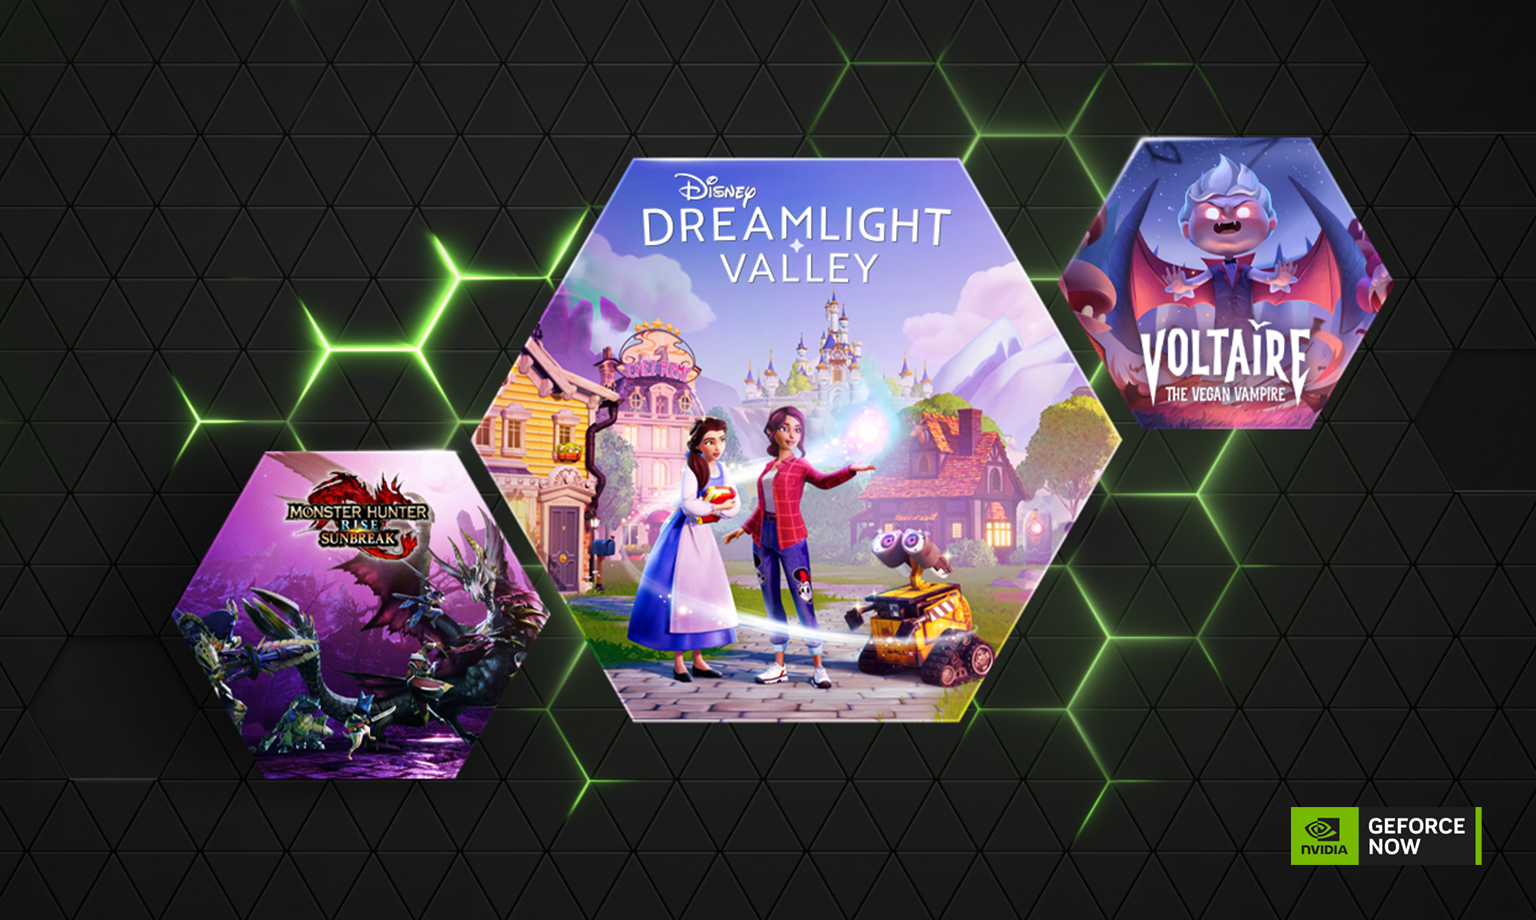 GeForce NOW, aggiornamento di marzo: 19 nuovi titoli in arrivo nel cloud, tra cui "Disney Dreamlight Valley"!